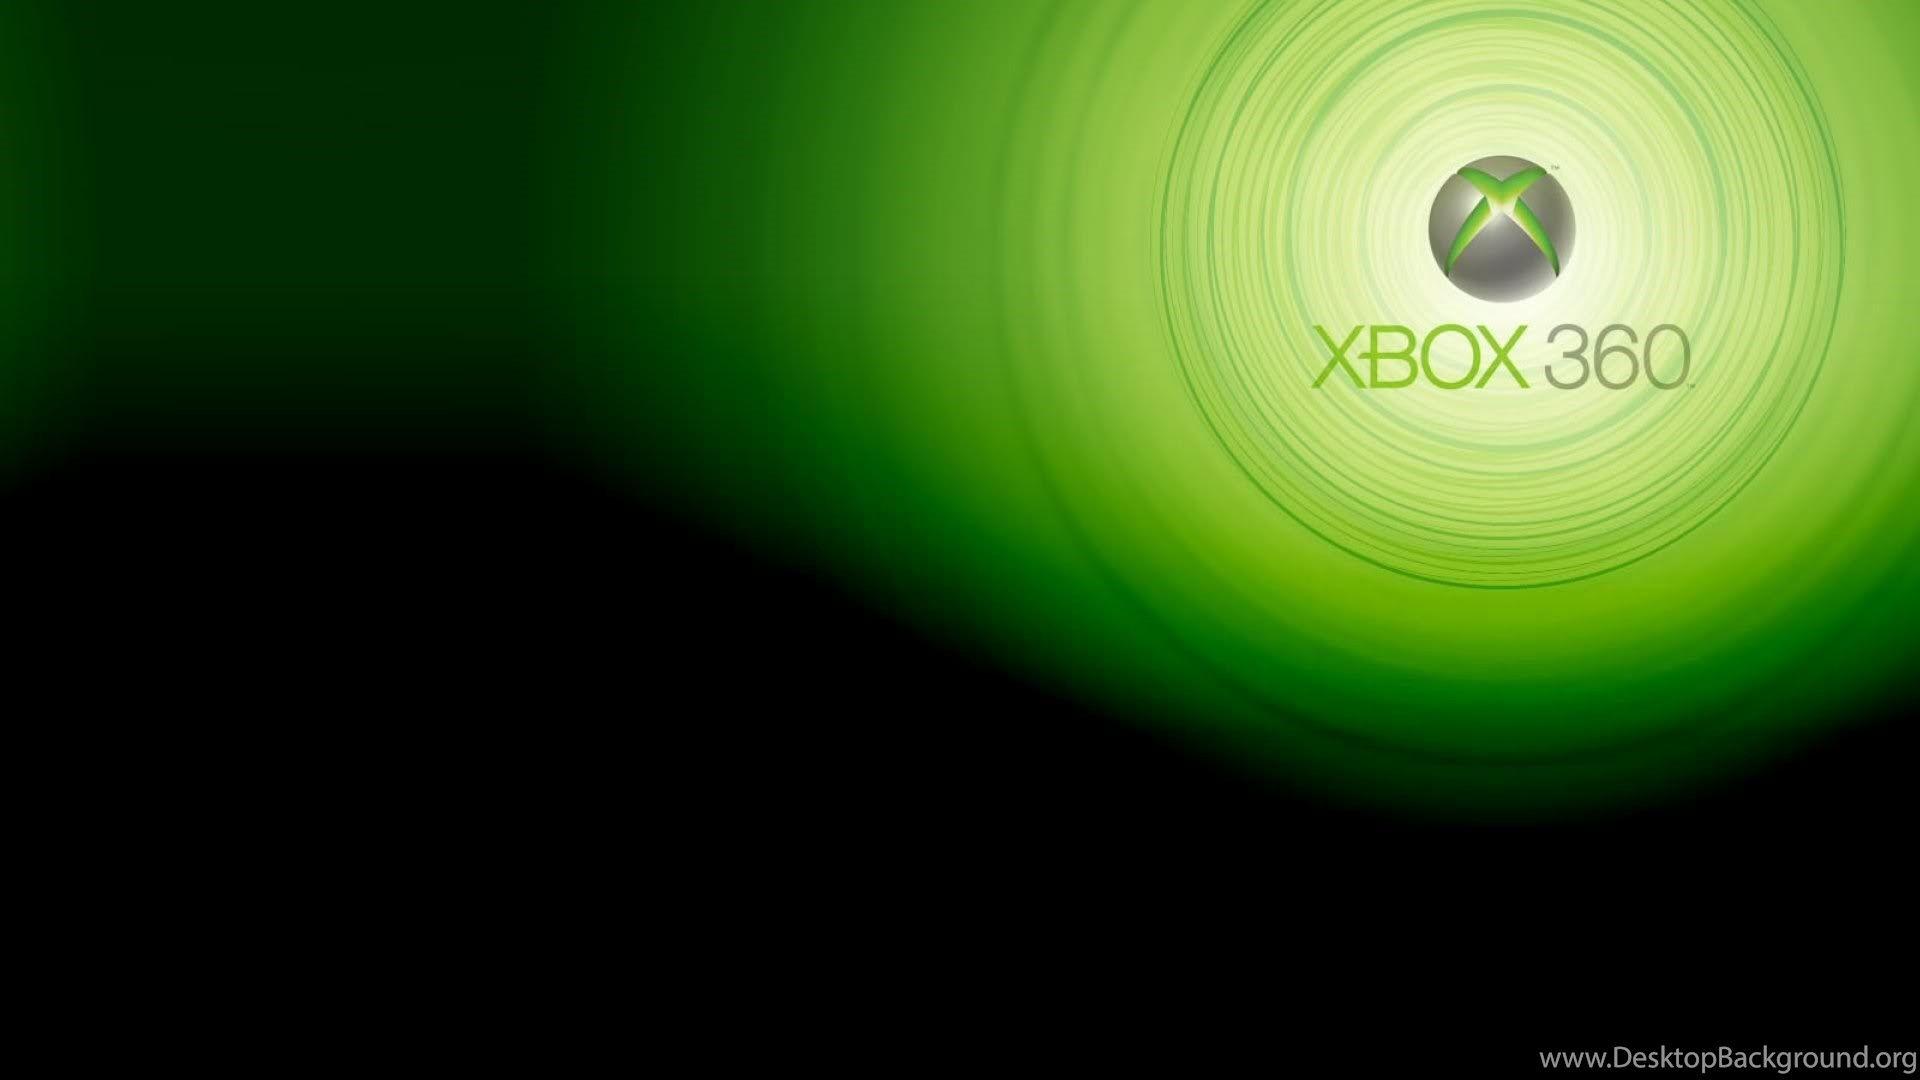 Fonds D'écran Xbox 360, Tous Les Wallpaper Xbox 360 Desktop Background